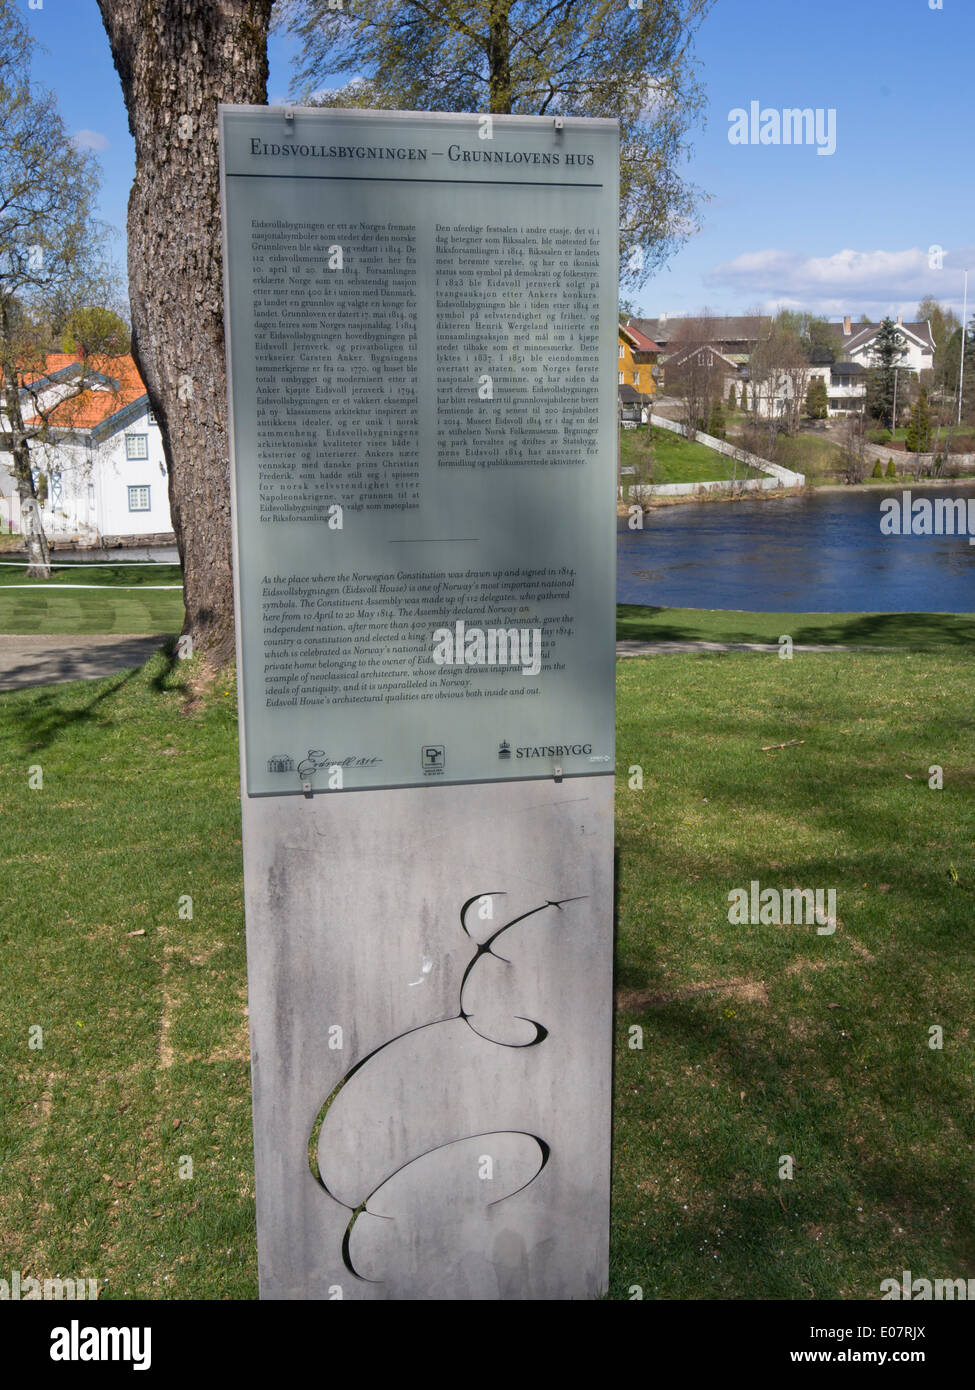 Eidsvoll Norwegen, interpretativen Board über die norwegische Verfassung wurde im Jahre 1814 unterzeichnet. Er sieht seinen 200. Geburtstag Stockfoto